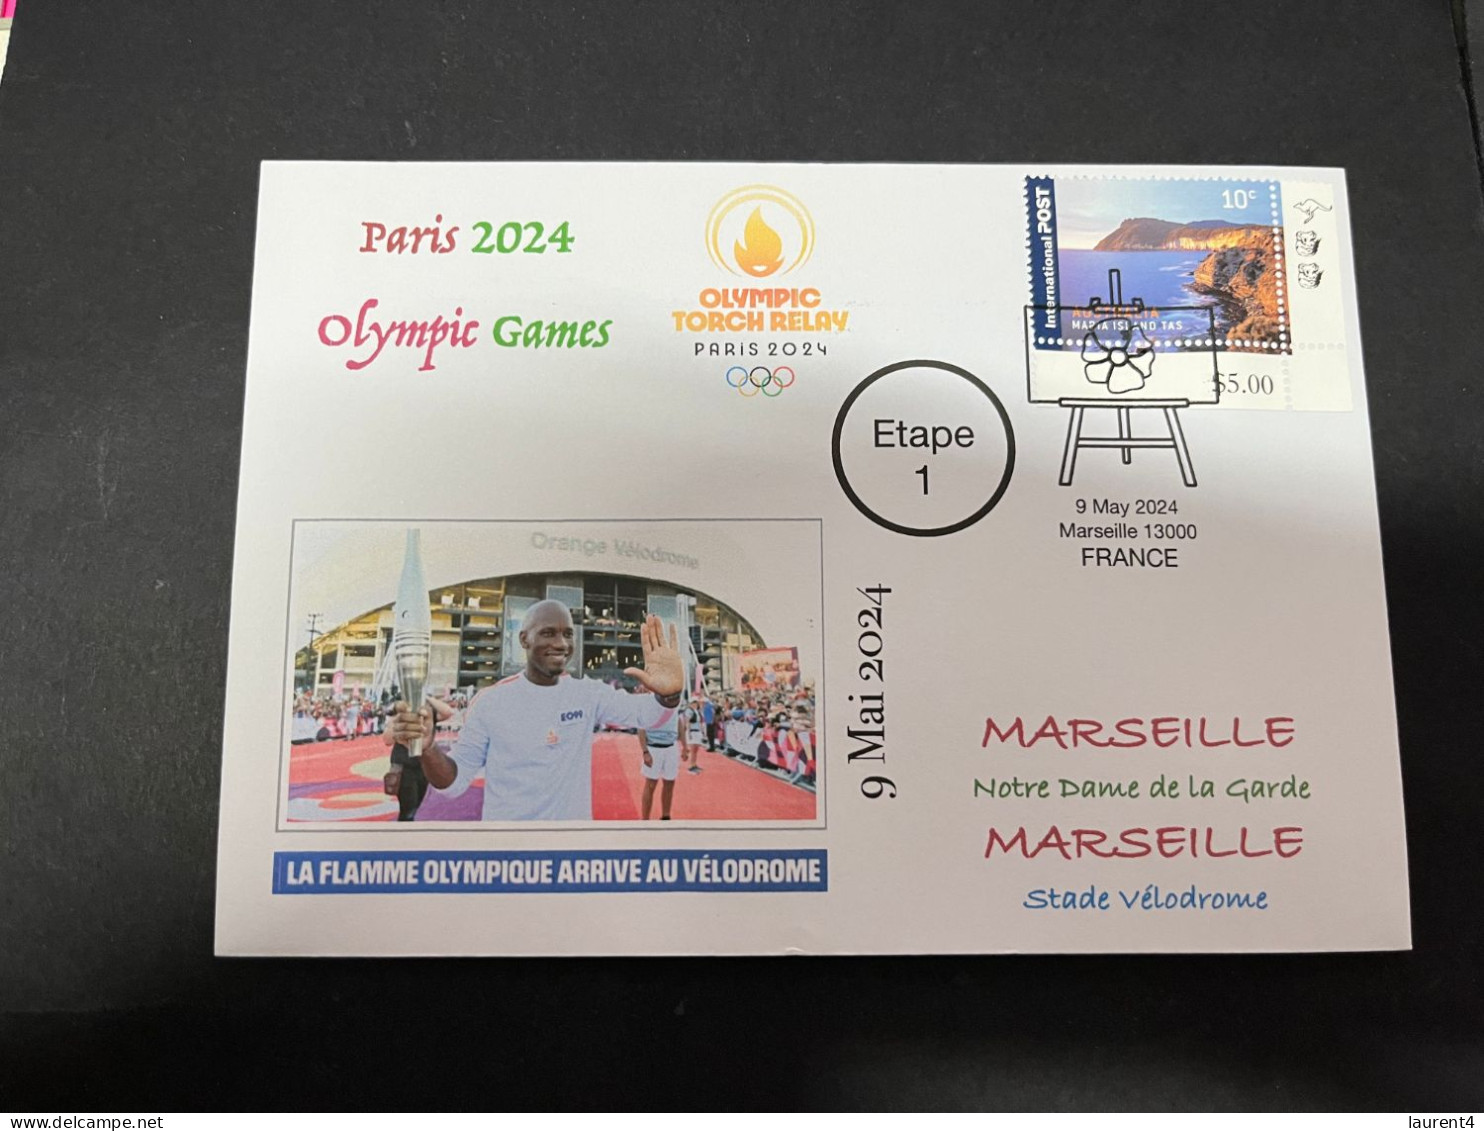 10-5-2024 (4 Z 37) Paris Olympic Games 2024 - Torch Relay (Etape 1) In Marseille (9-5-2024) With OZ Stamp - Eté 2024 : Paris